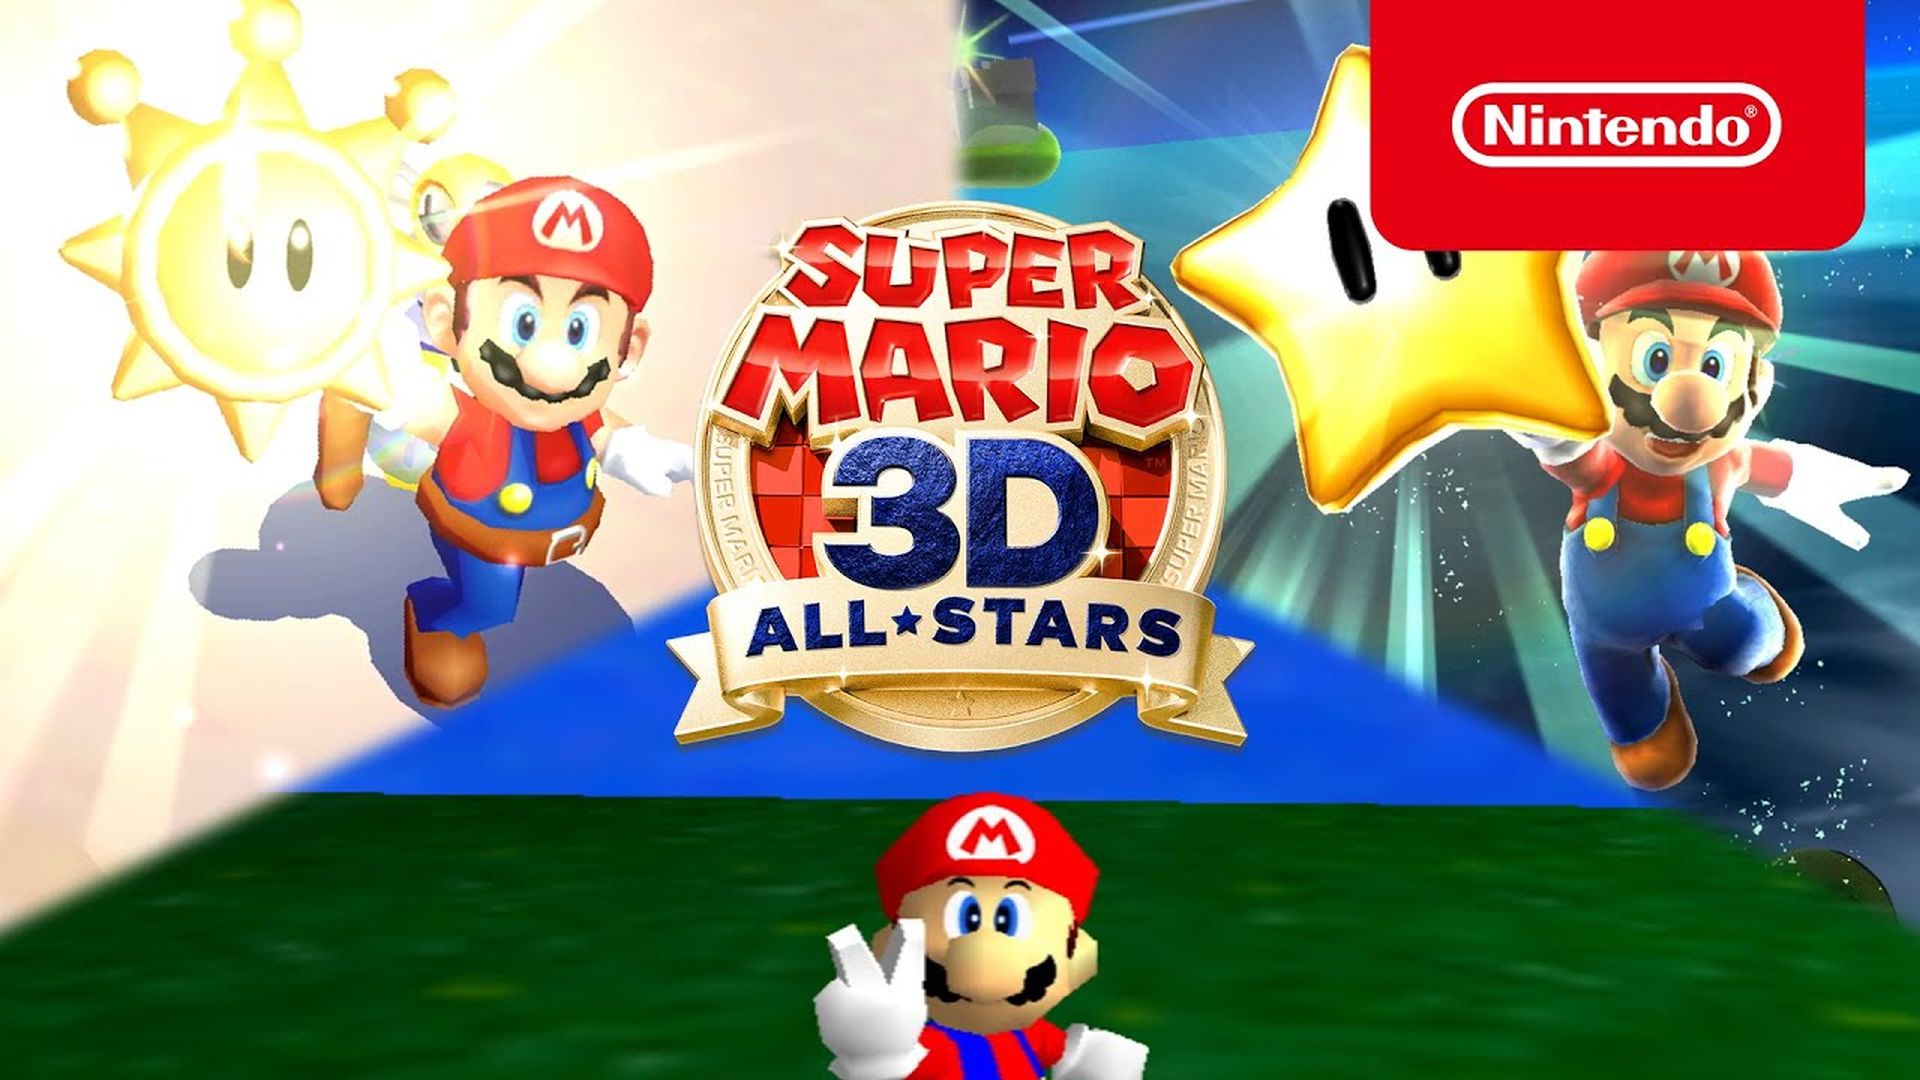 Super Mario 3d All Stars nằm trong số những sản phẩm bán chạy nhất năm 2020 của Amazon